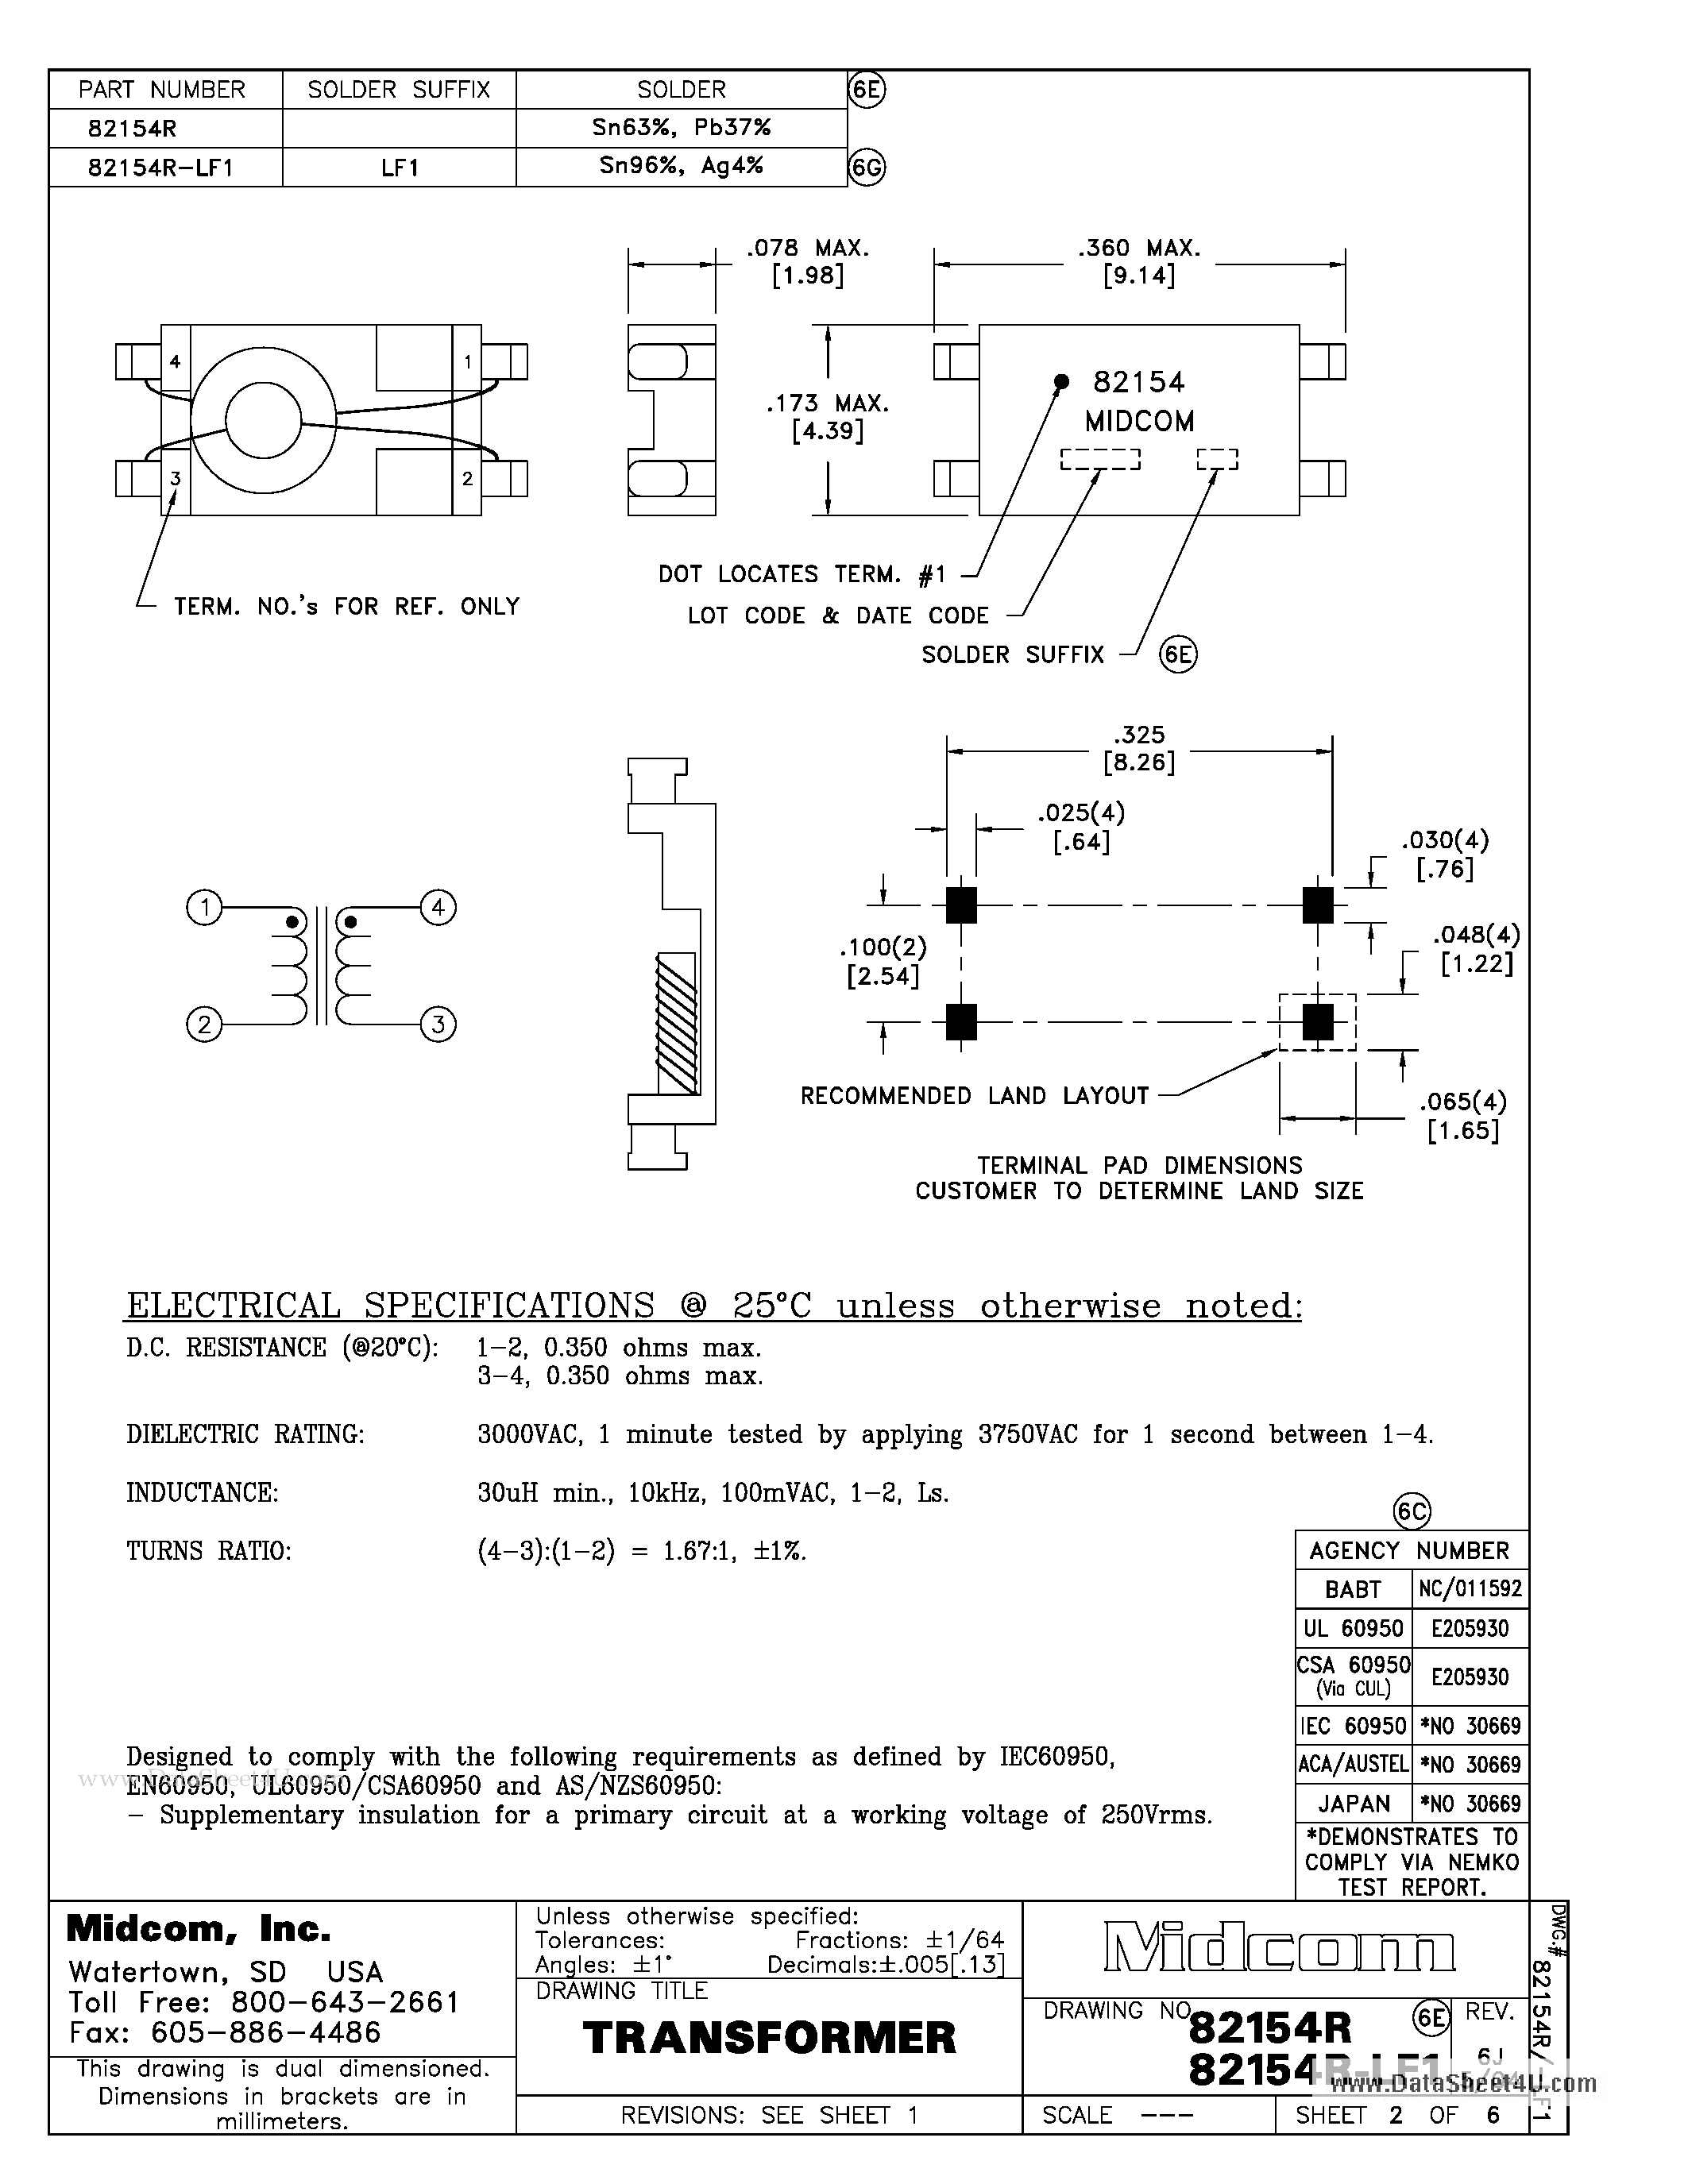 Datasheet 82154R - Transformer page 1